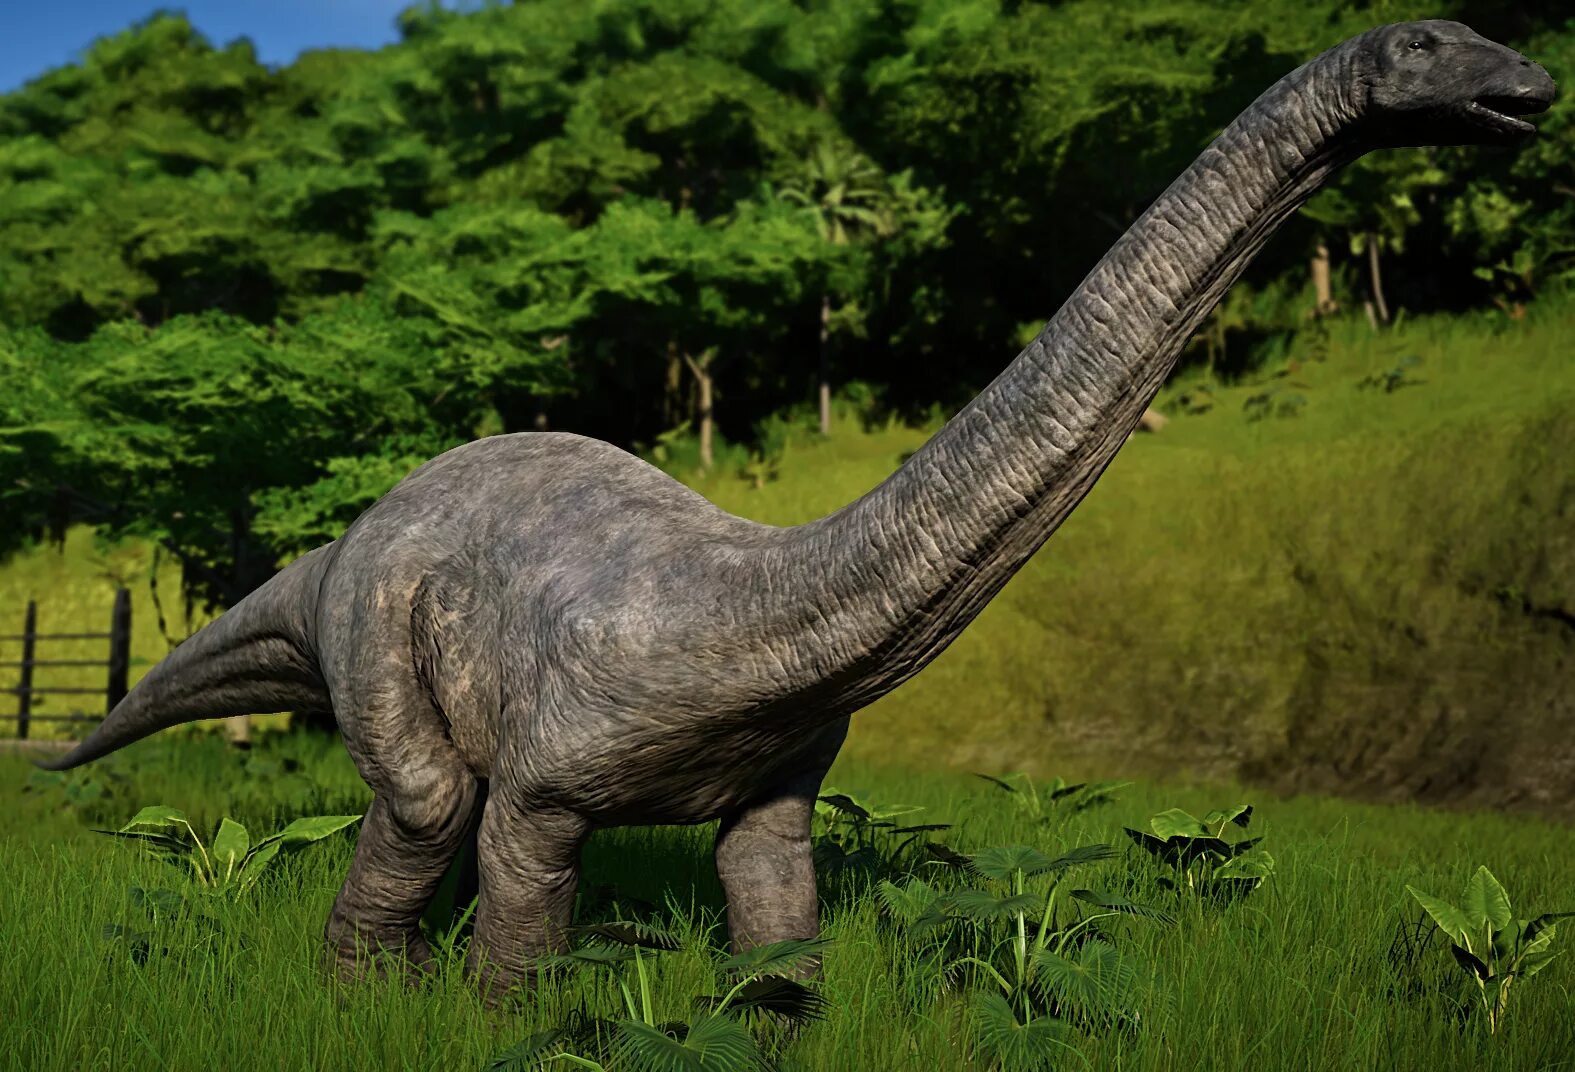 Длинношеий динозавр. Апатозавр Диплодок Бронтозавр. Зауропод Апатозавр. Динозавры Диплодок Бронтозавр. Апатозавр парк Юрского периода.